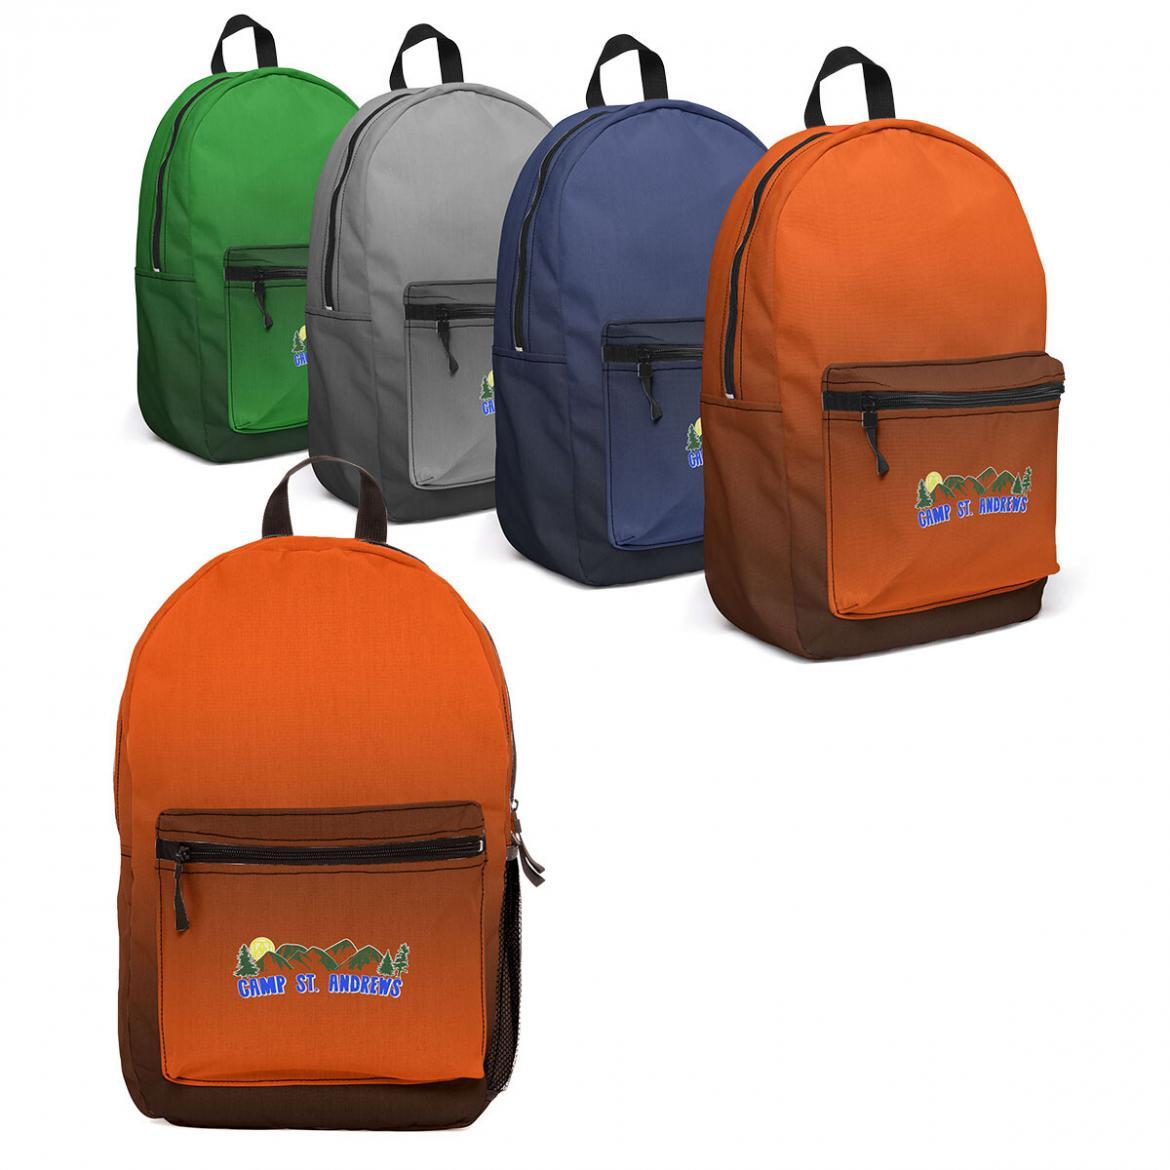 backpack-collection-med.jpg